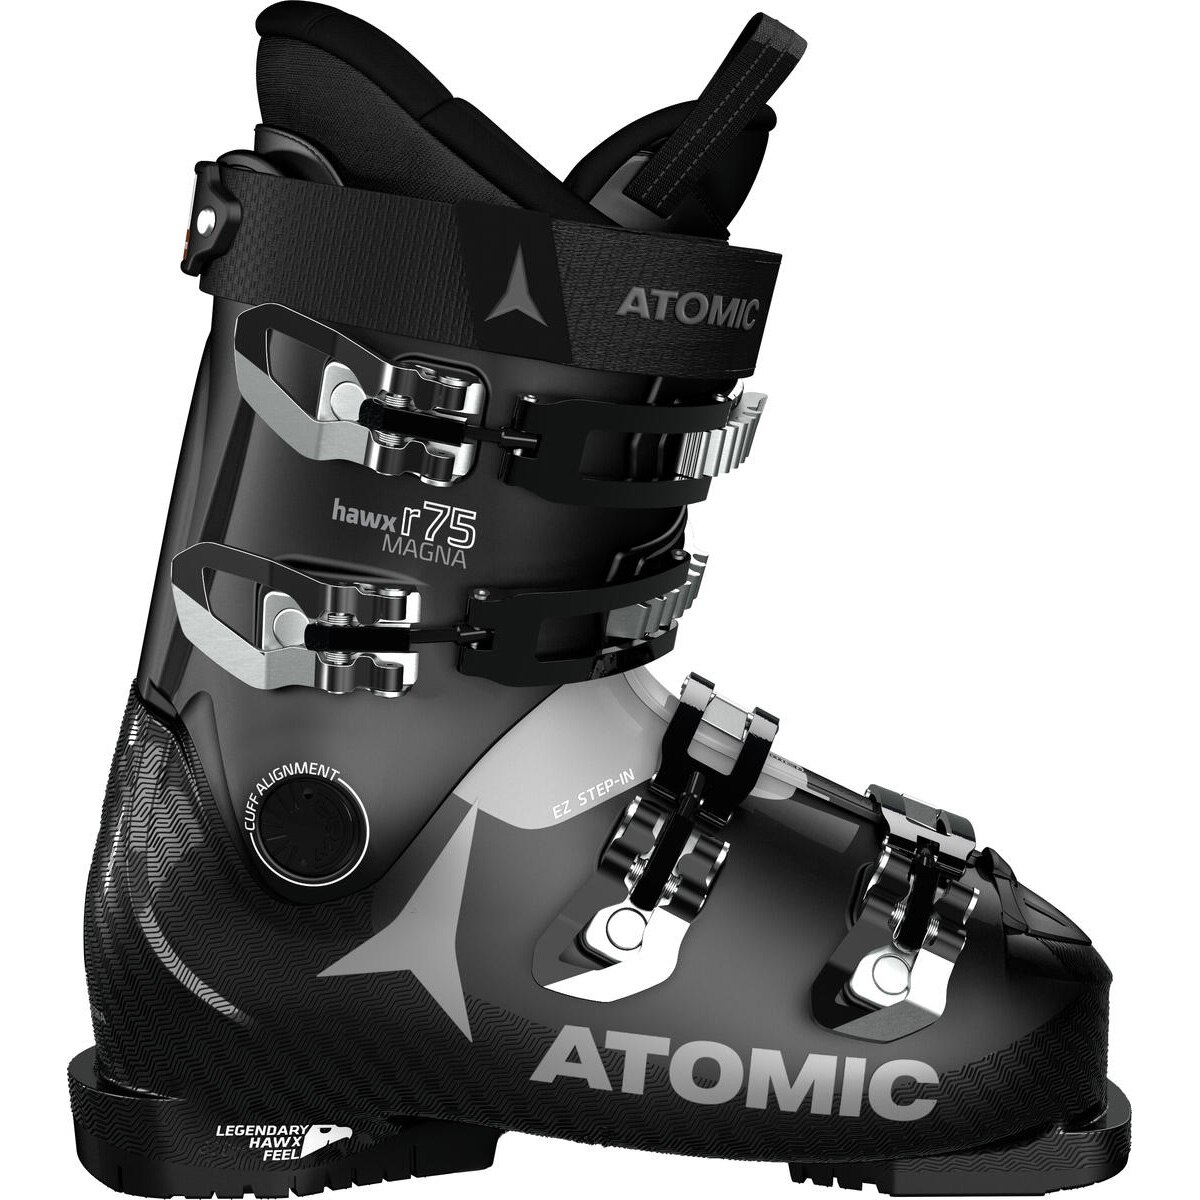 Fotografie Clapari ski Atomic HAWX MAGNA R75 W, pentru femei, marime 40.5/41-mondo 26X, negru/gri